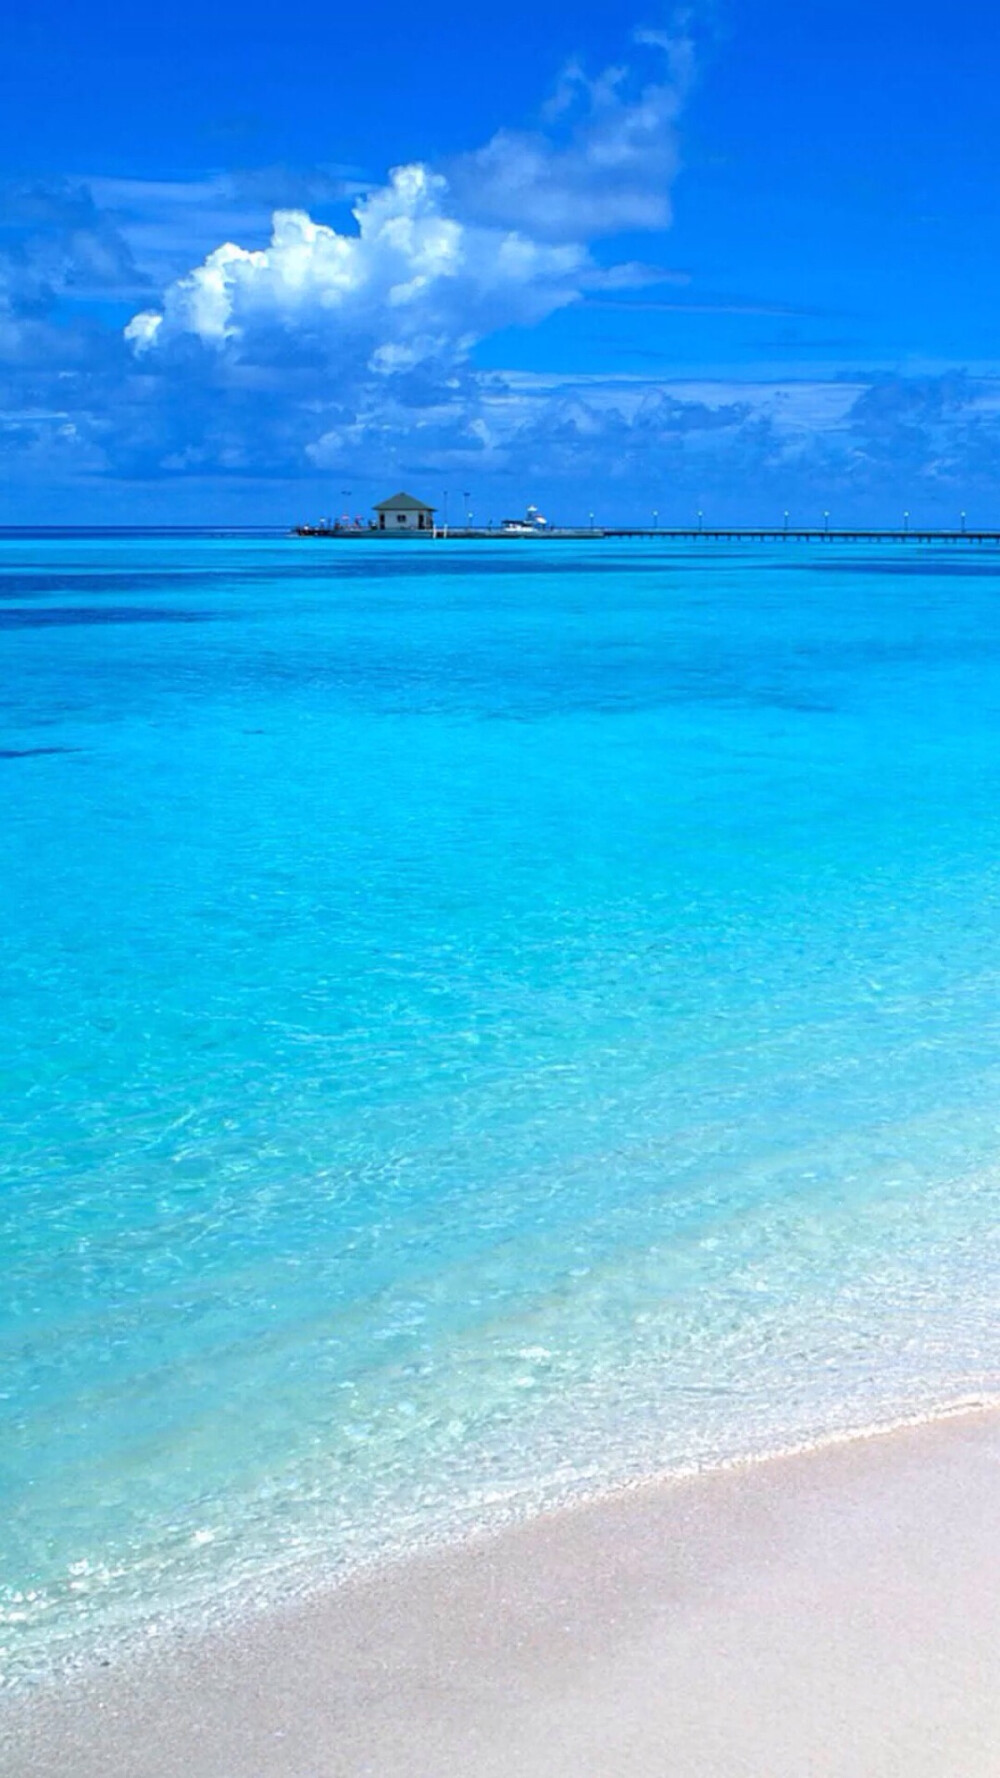 唯美自然风景 蓝天碧海 海洋 沙滩 唯美风景 iphone手机壁纸 唯美壁纸